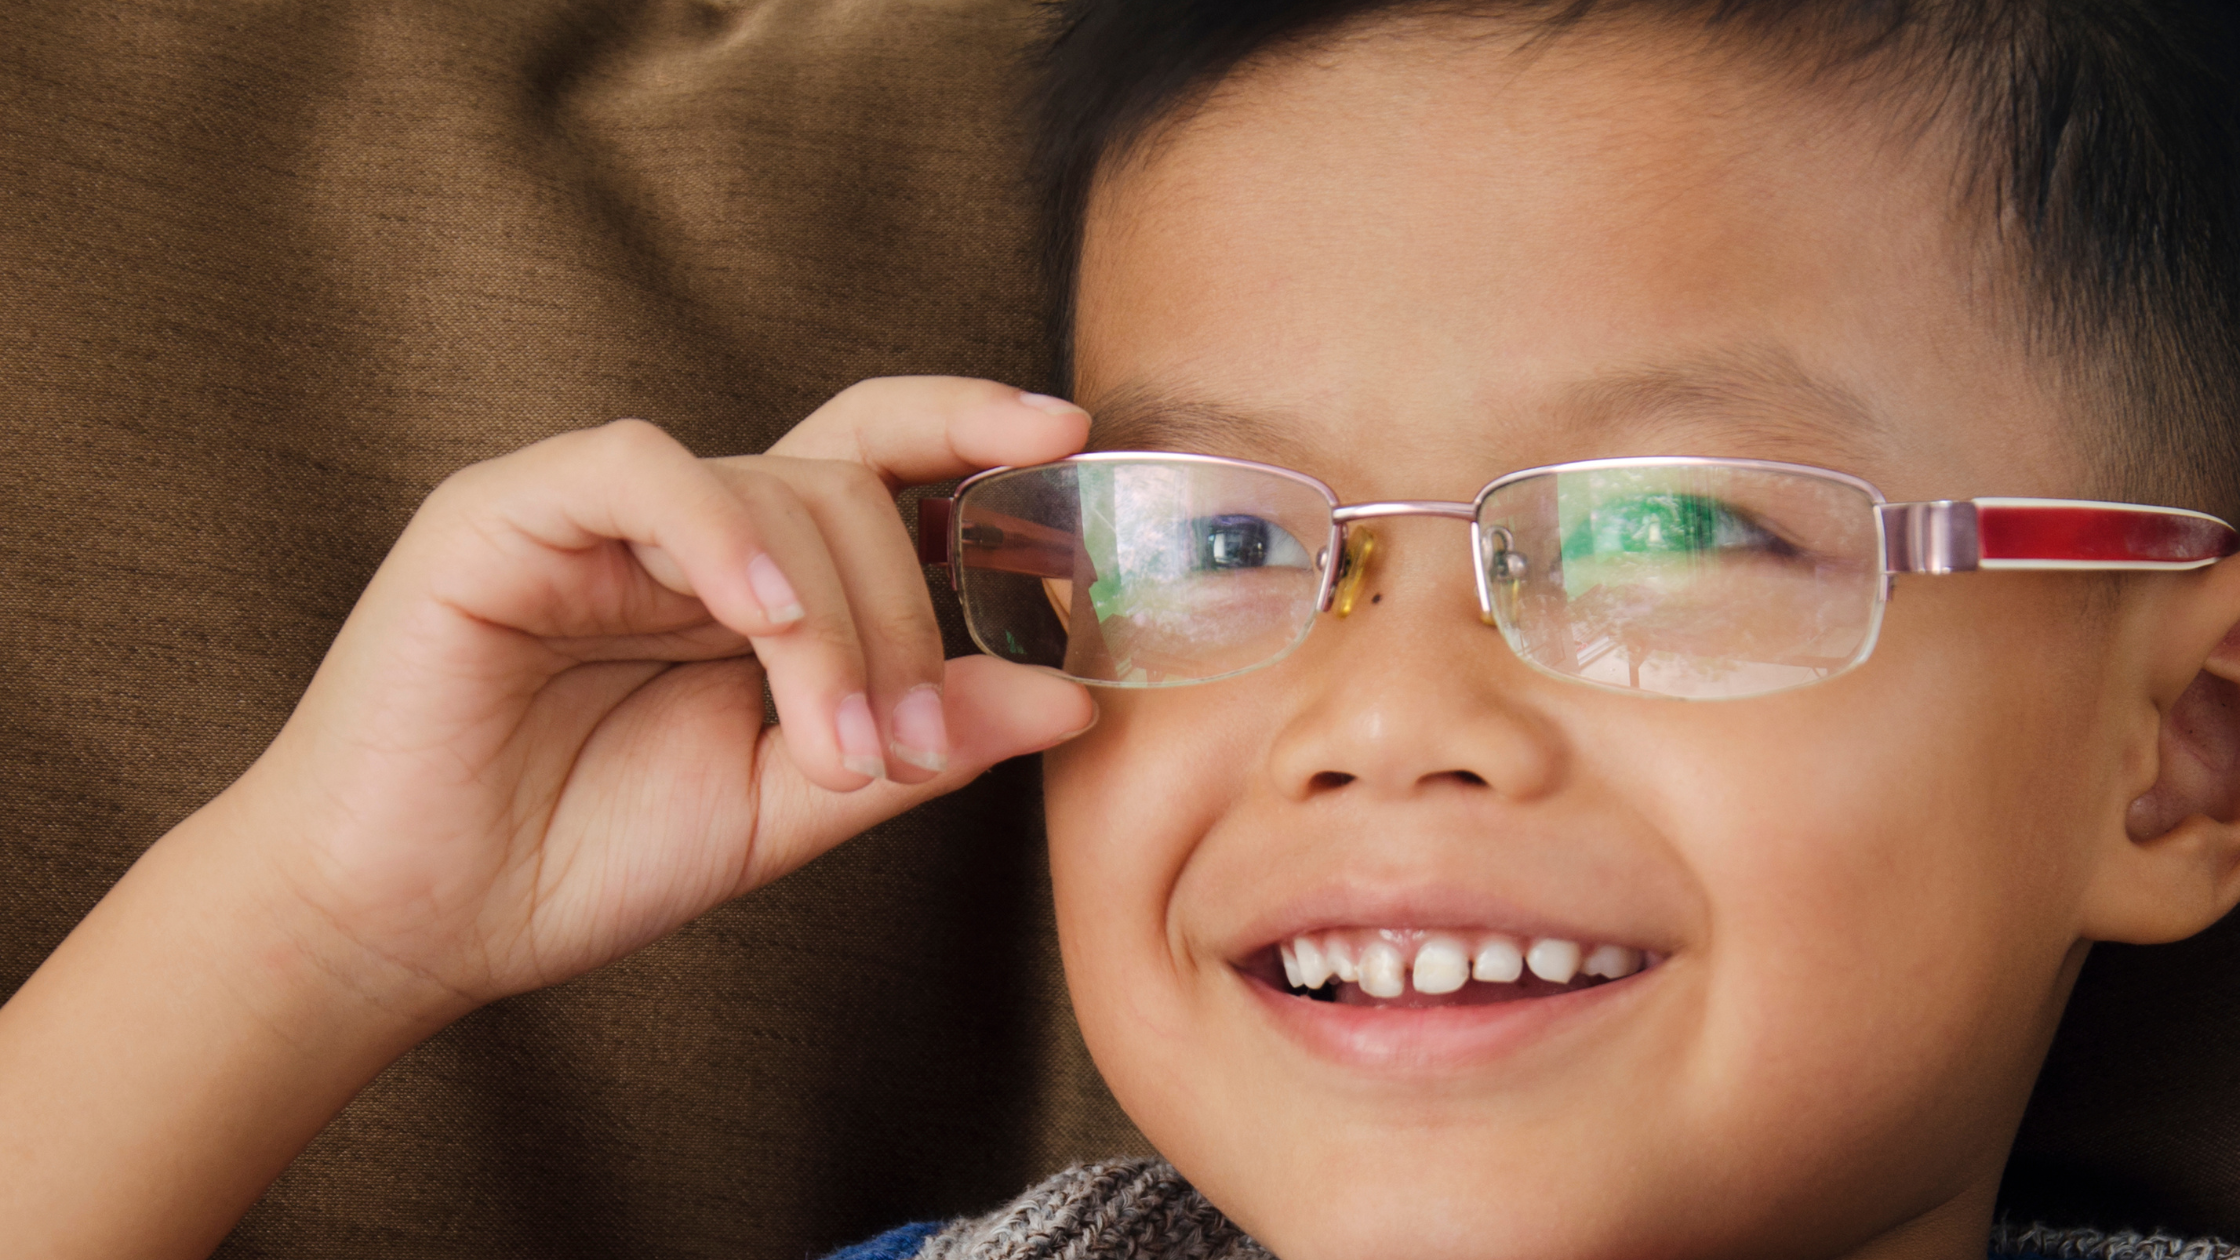 แว่นตาเด็ก การเลือกร้านแว่นเด็ก ควรรู้อะไร ก่อนเลือกซื้อแว่นสำหรับเด็ก By Clear Vision ร้านแว่นสยาม